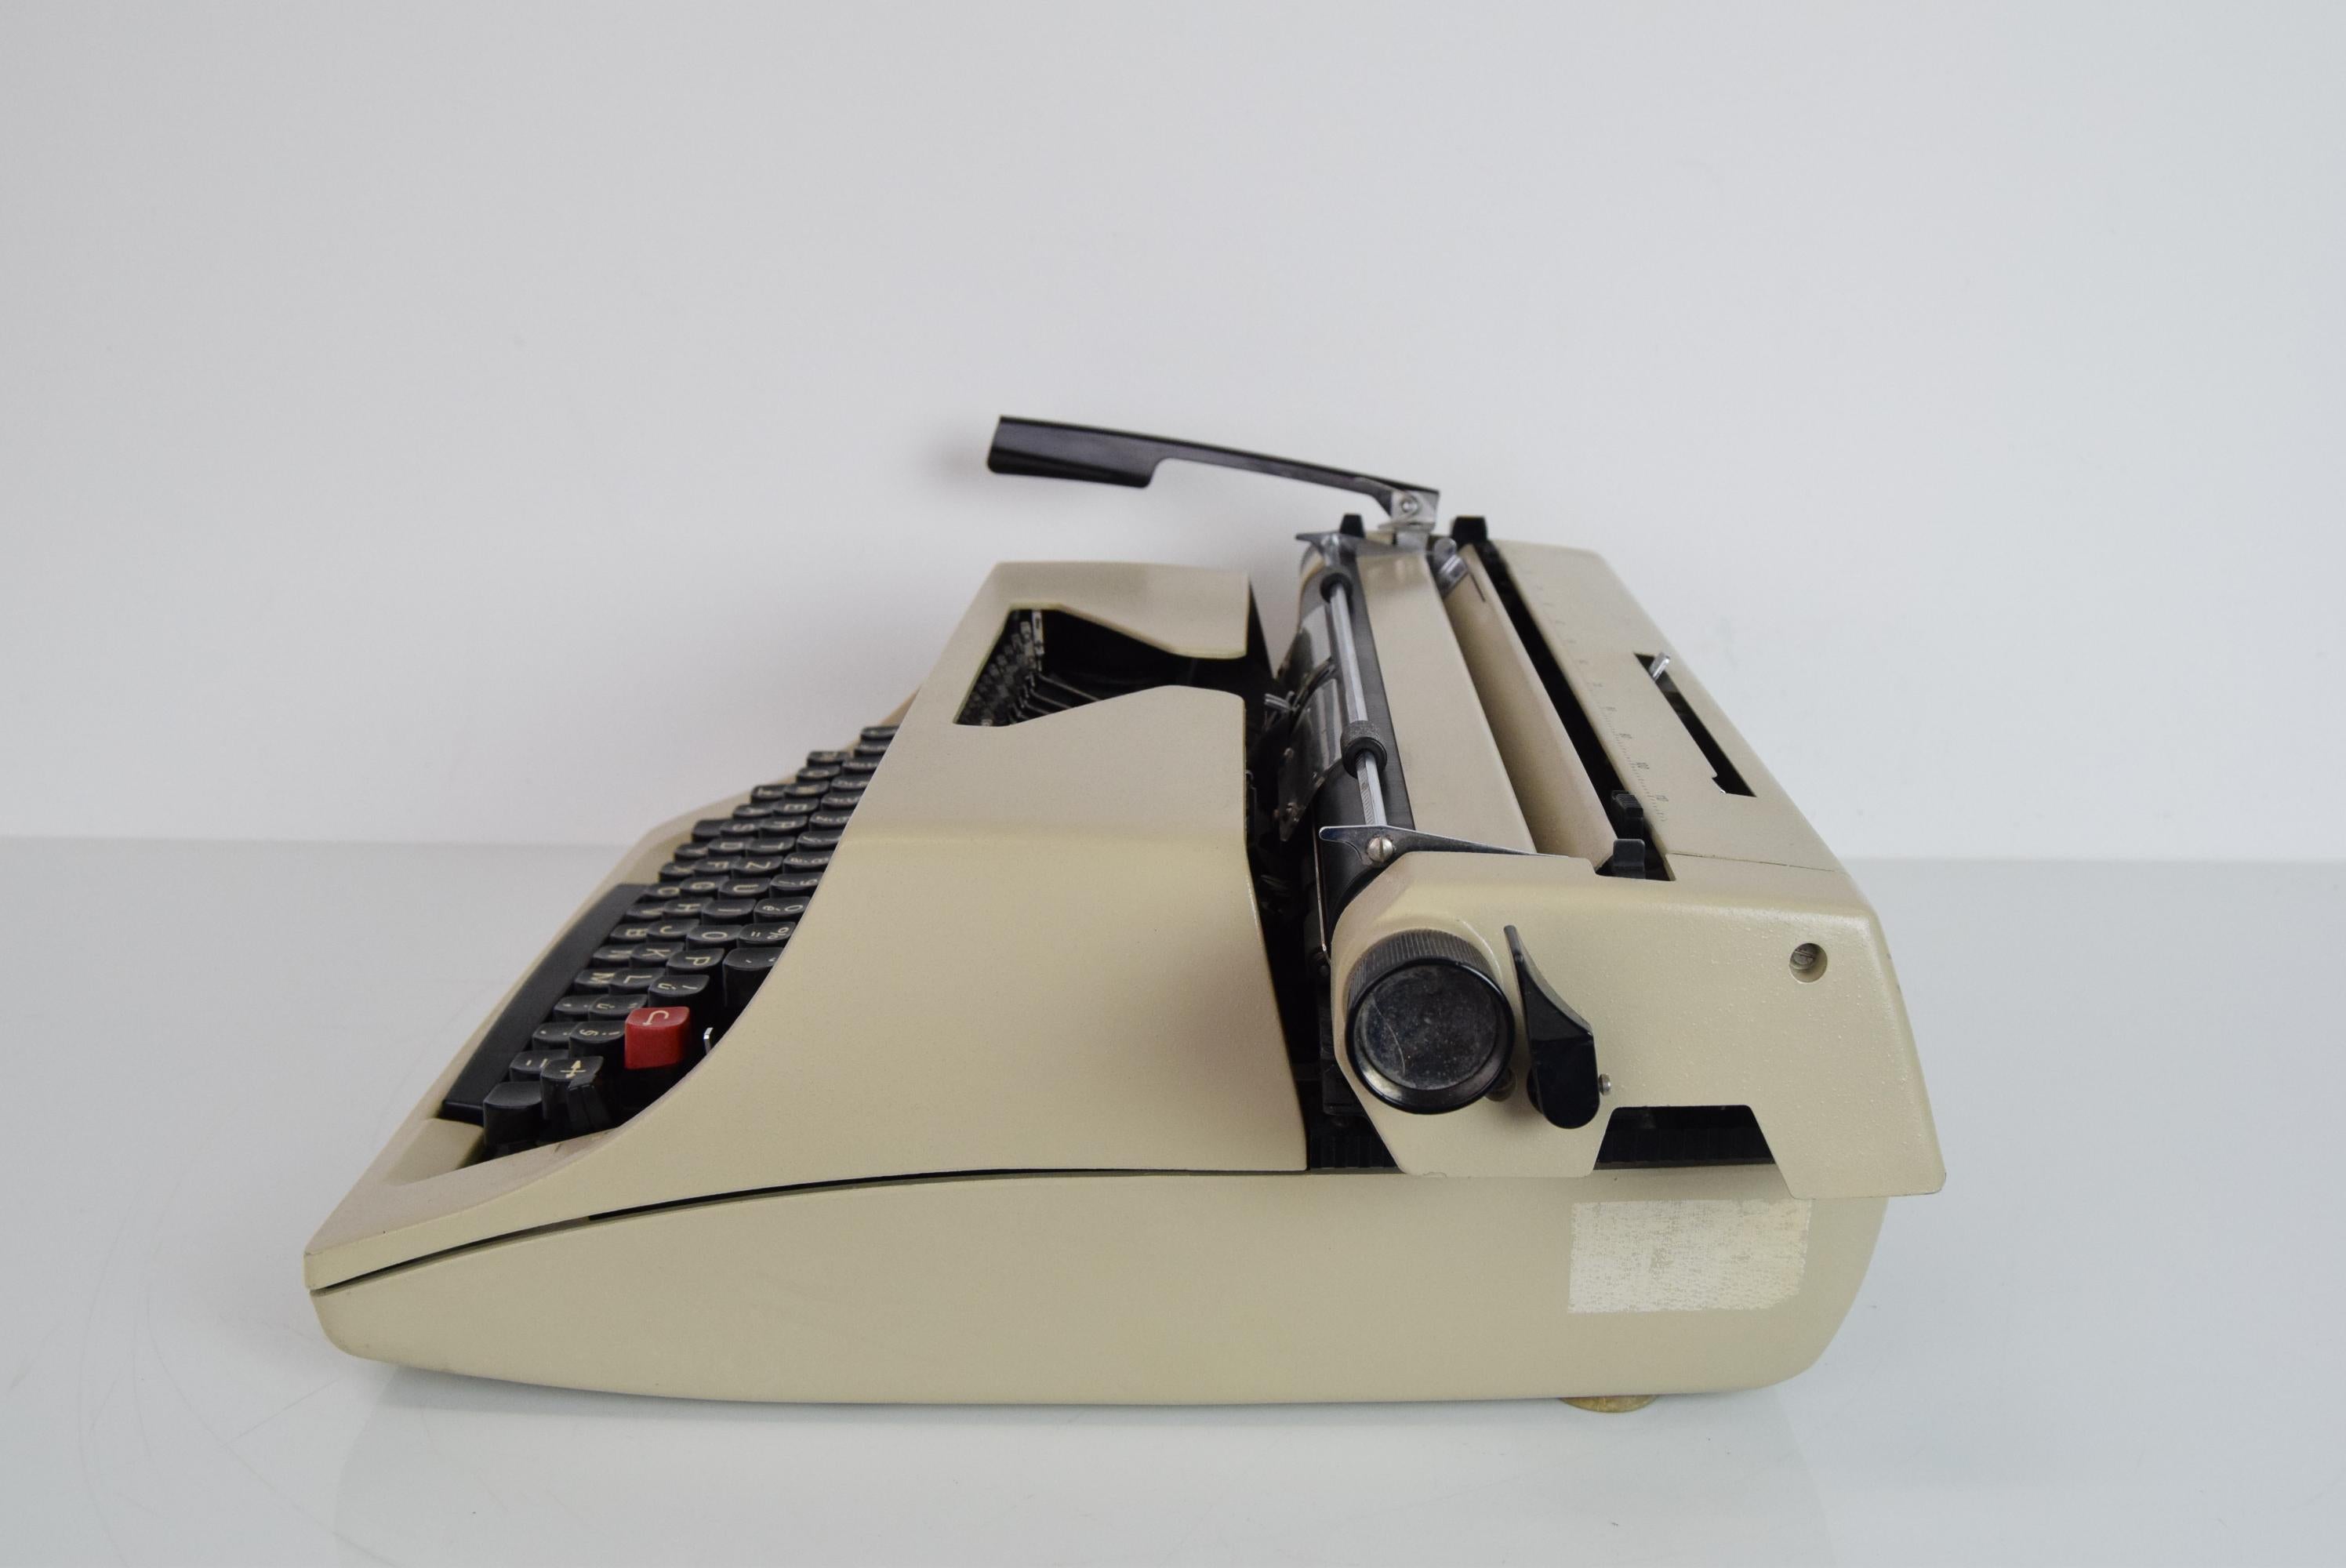 1980s typewriter